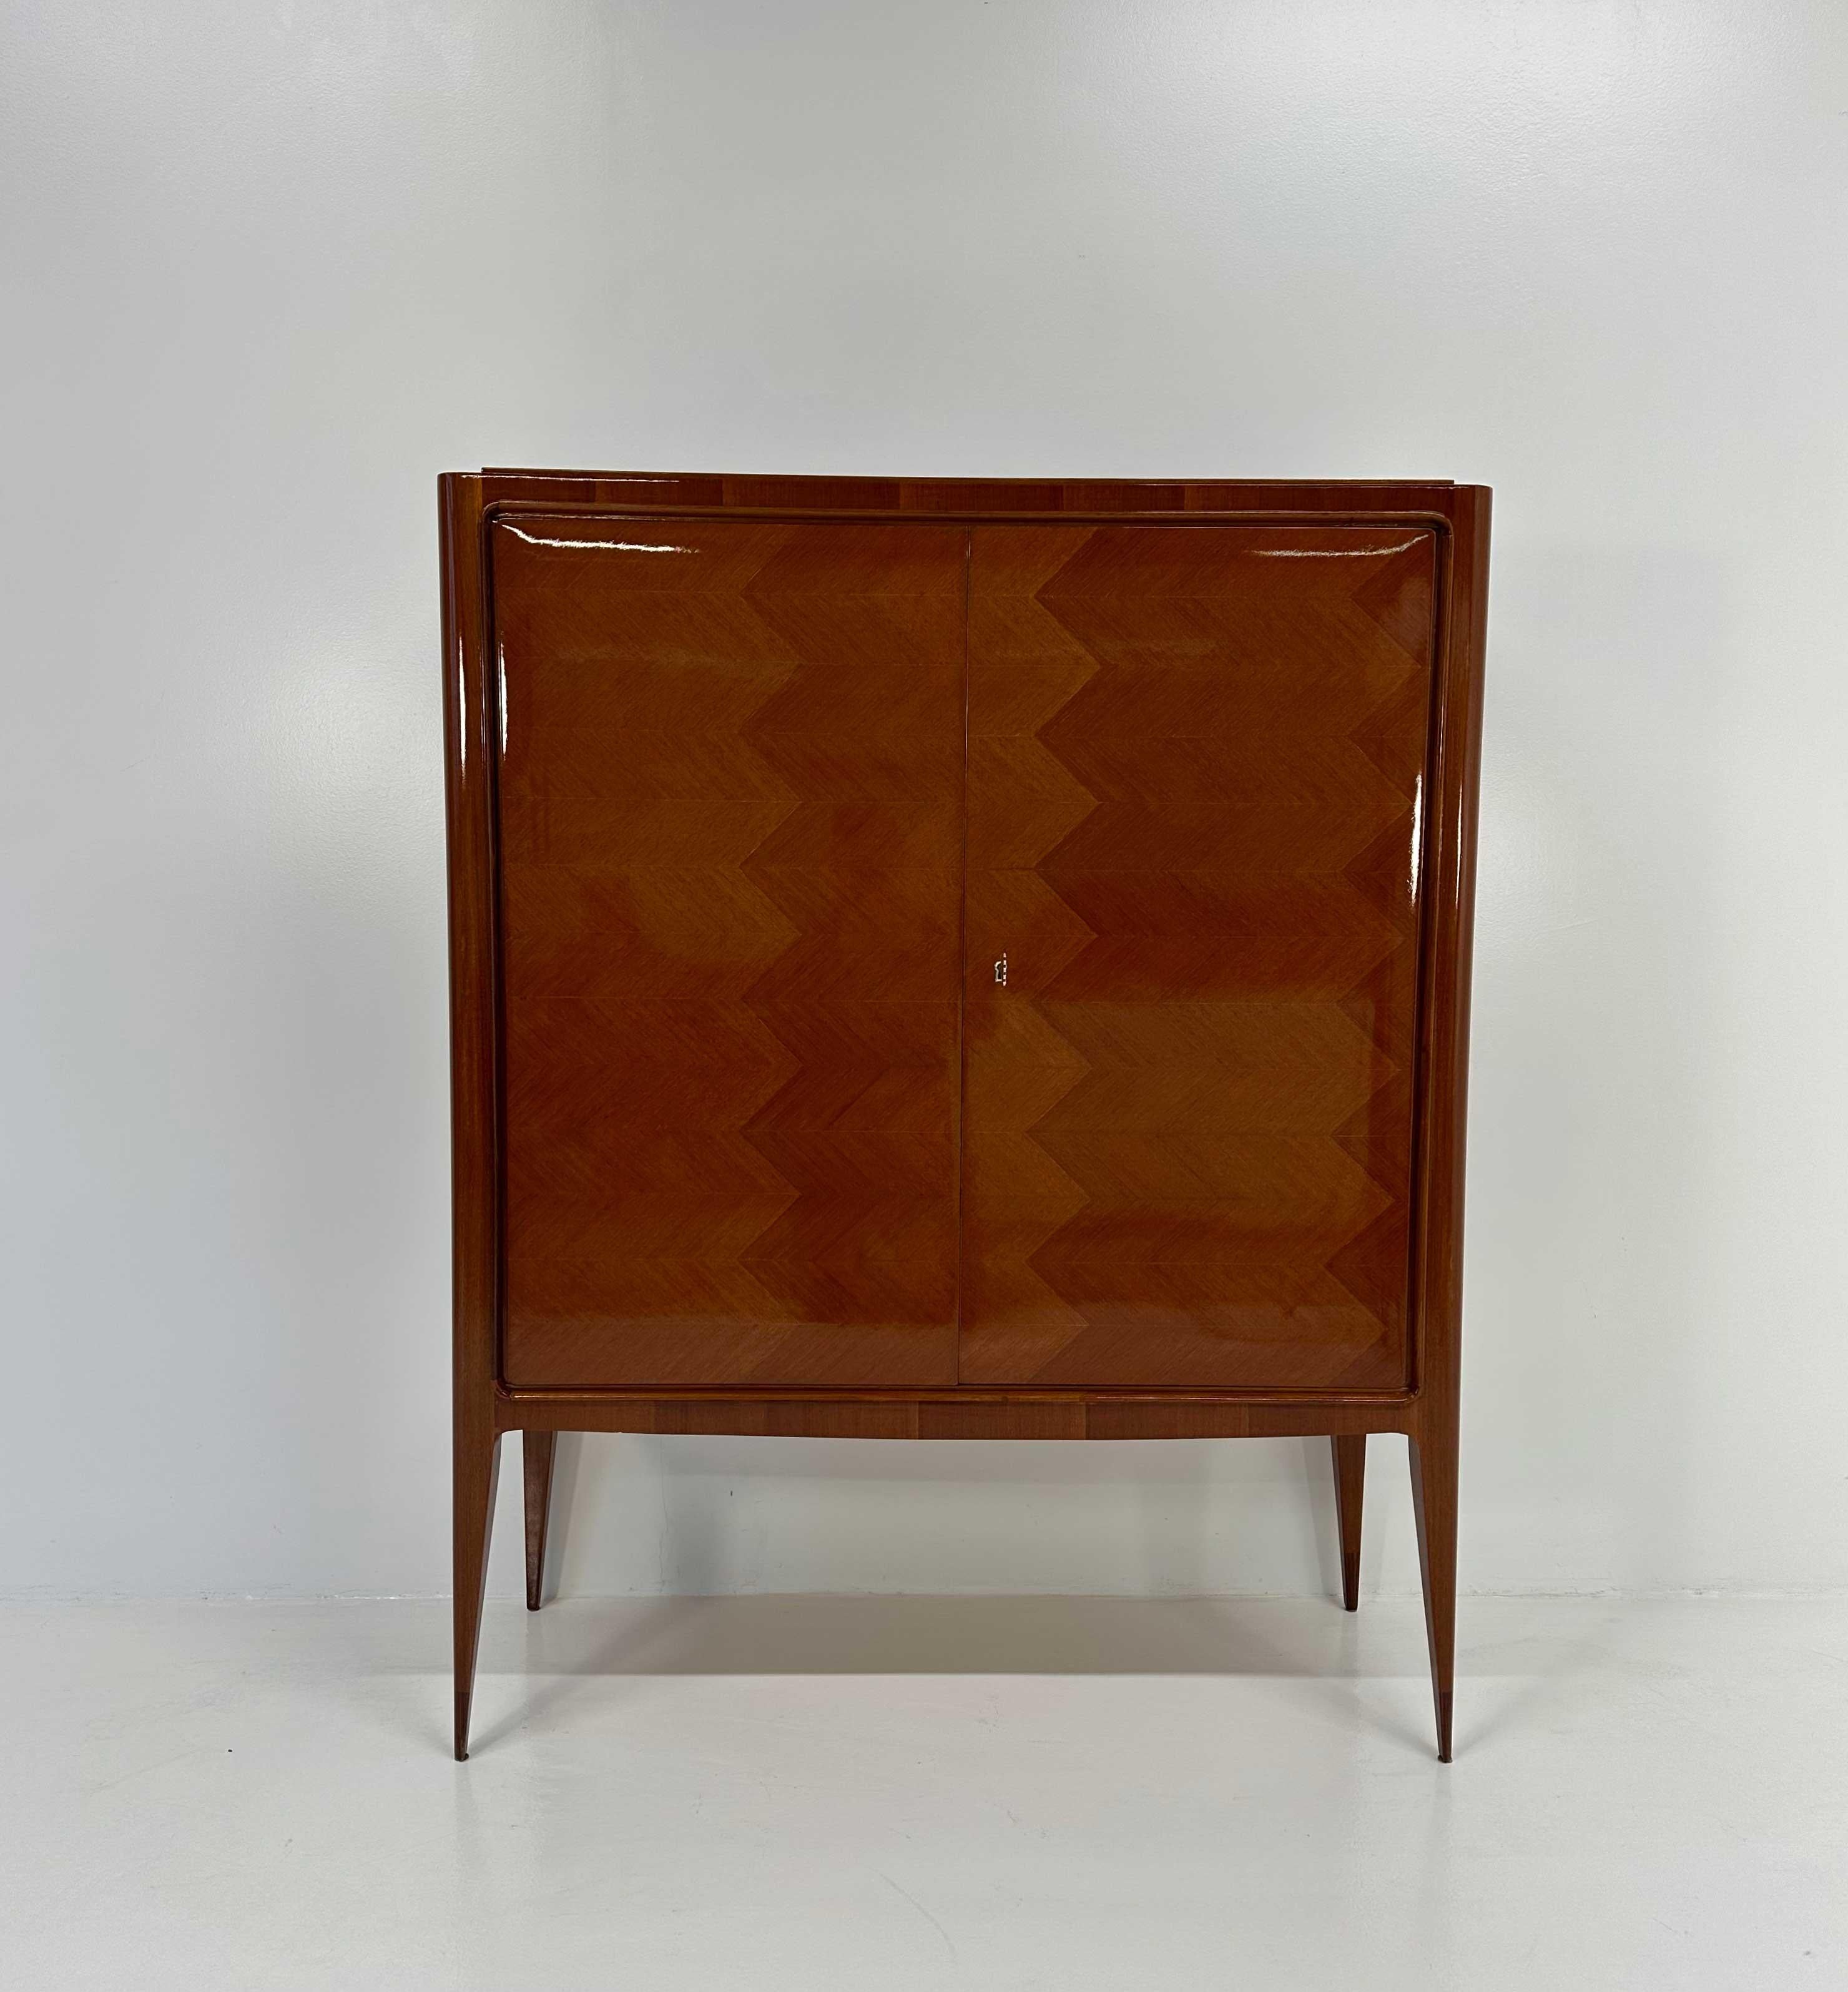 Ce meuble de bar a été produit en Italie dans les années 1950 par Paolo Buffa. 
La structure extérieure est entièrement réalisée en bois de teck. 
La beauté de cette pièce est couronnée par les intérieurs élégants, caractérisés par la présence de